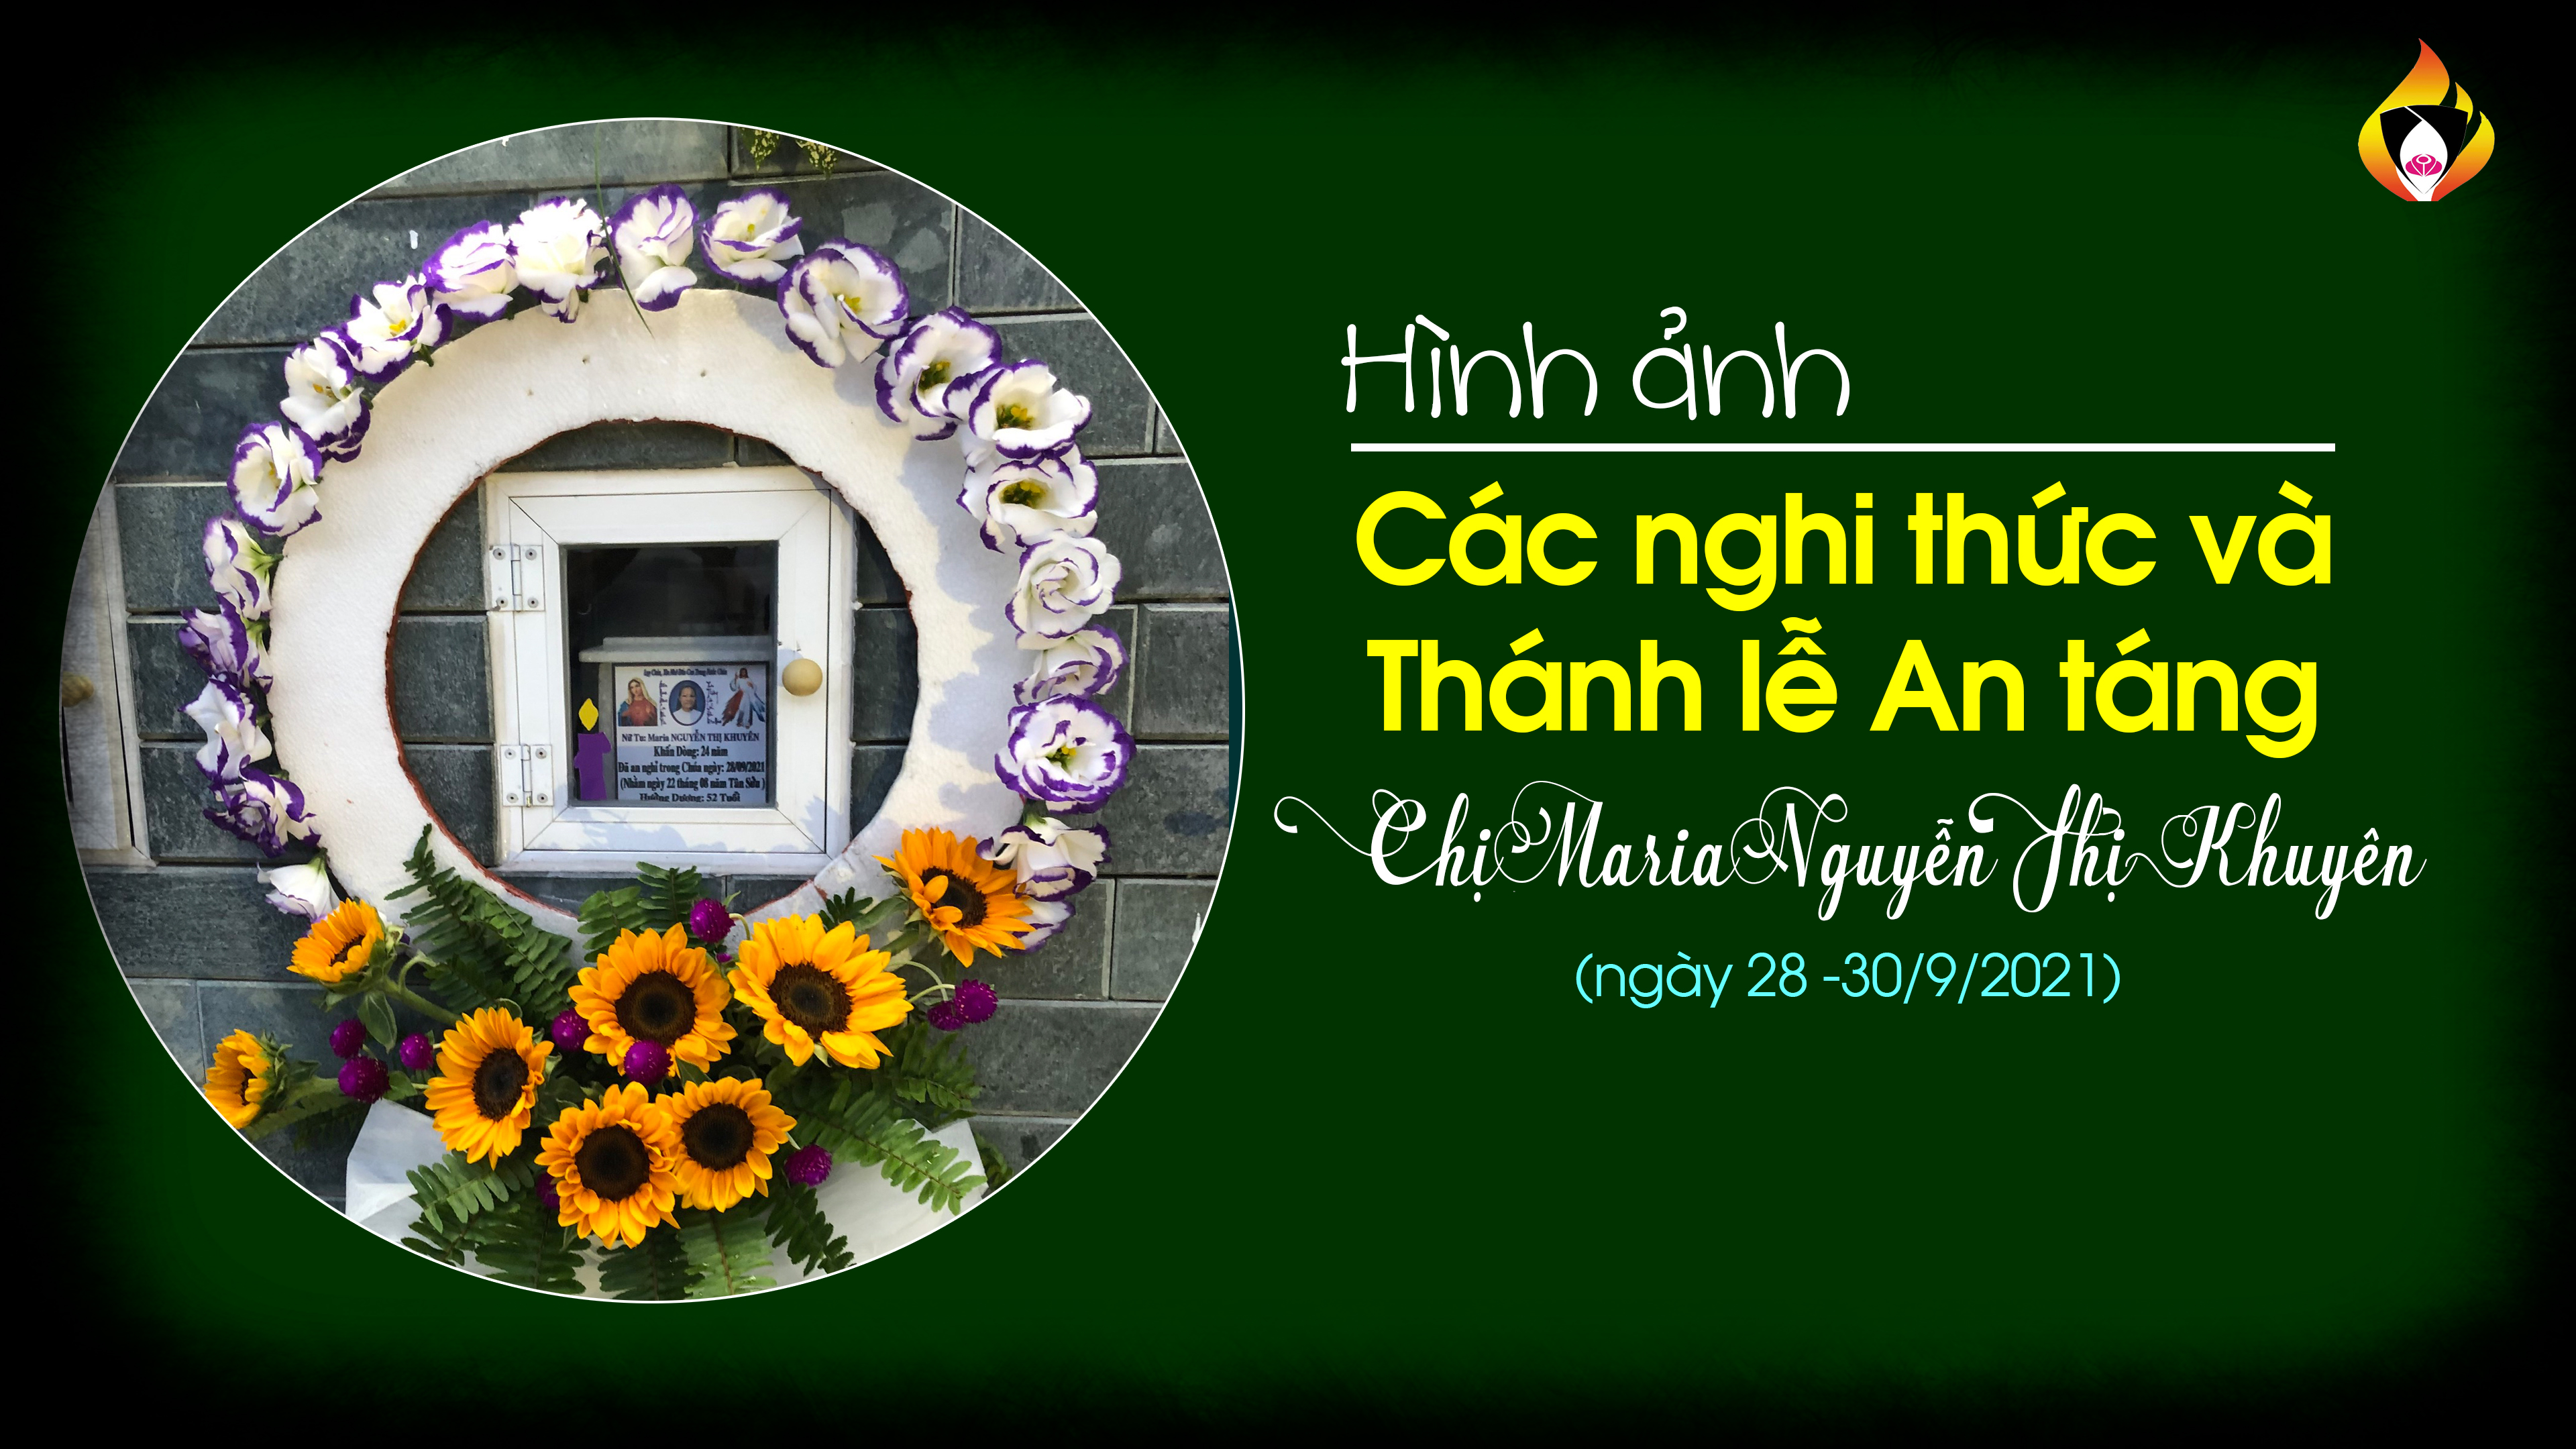 Hình ảnh các nghi thức và Lễ An táng chị Maria Nguyễn Thị Khuyên